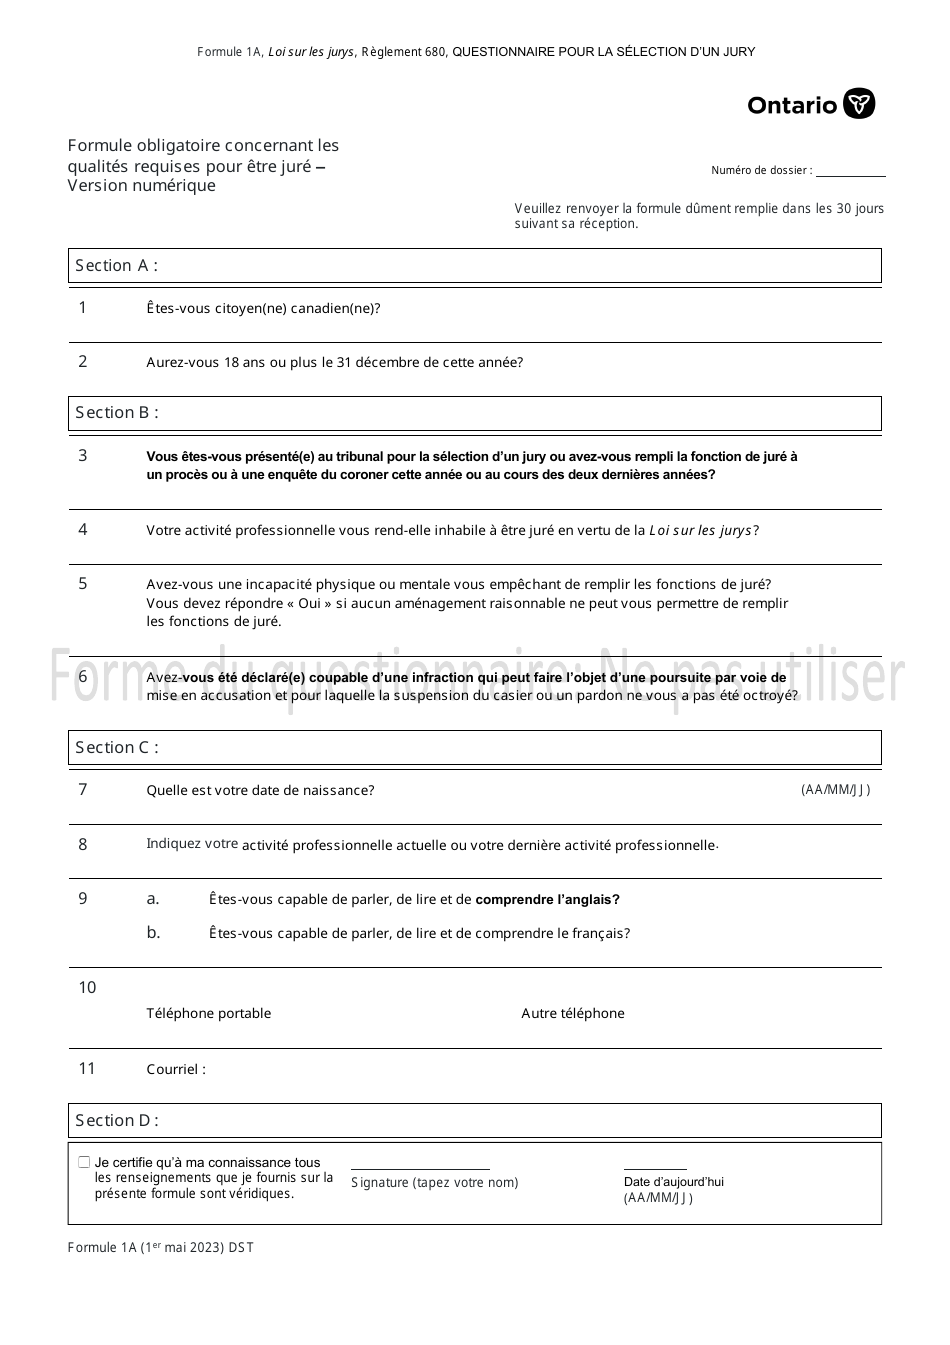 Forme 1A Formule Obligatoire Concernant Les Qualites Requises Pour Etre Jure - Version Numerique - Ontario, Canada (French), Page 1